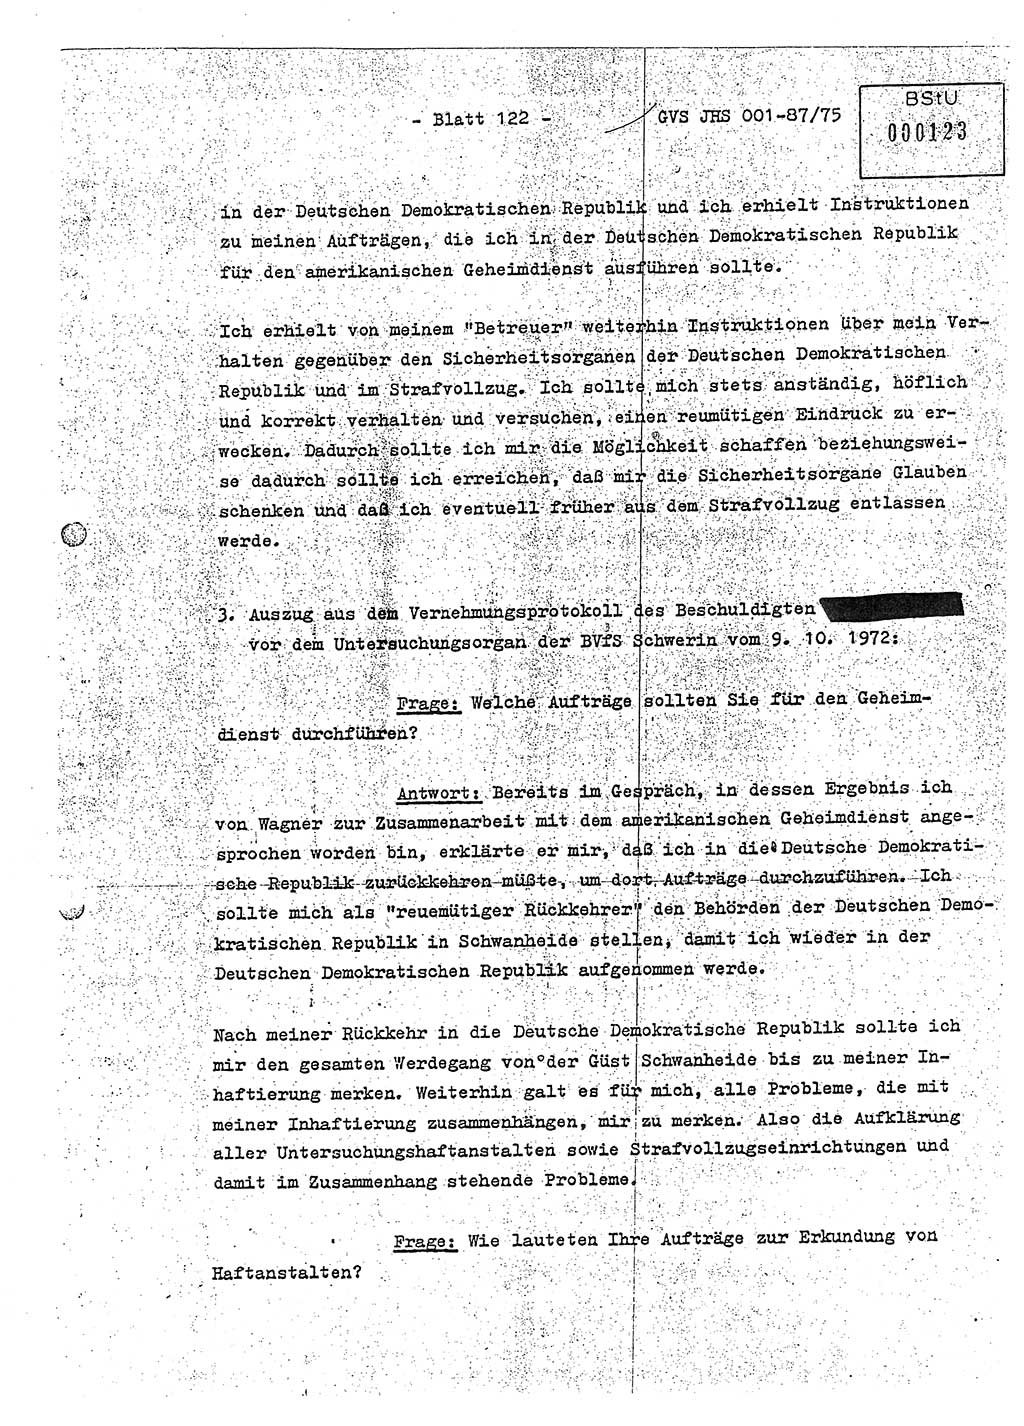 Diplomarbeit Hauptmann Volkmar Heinz (Abt. ⅩⅣ), Oberleutnant Lothar Rüdiger (BV Lpz. Abt. Ⅺ), Ministerium für Staatssicherheit (MfS) [Deutsche Demokratische Republik (DDR)], Juristische Hochschule (JHS), Geheime Verschlußsache (GVS) o001-87/75, Potsdam 1975, Seite 122 (Dipl.-Arb. MfS DDR JHS GVS o001-87/75 1975, S. 122)